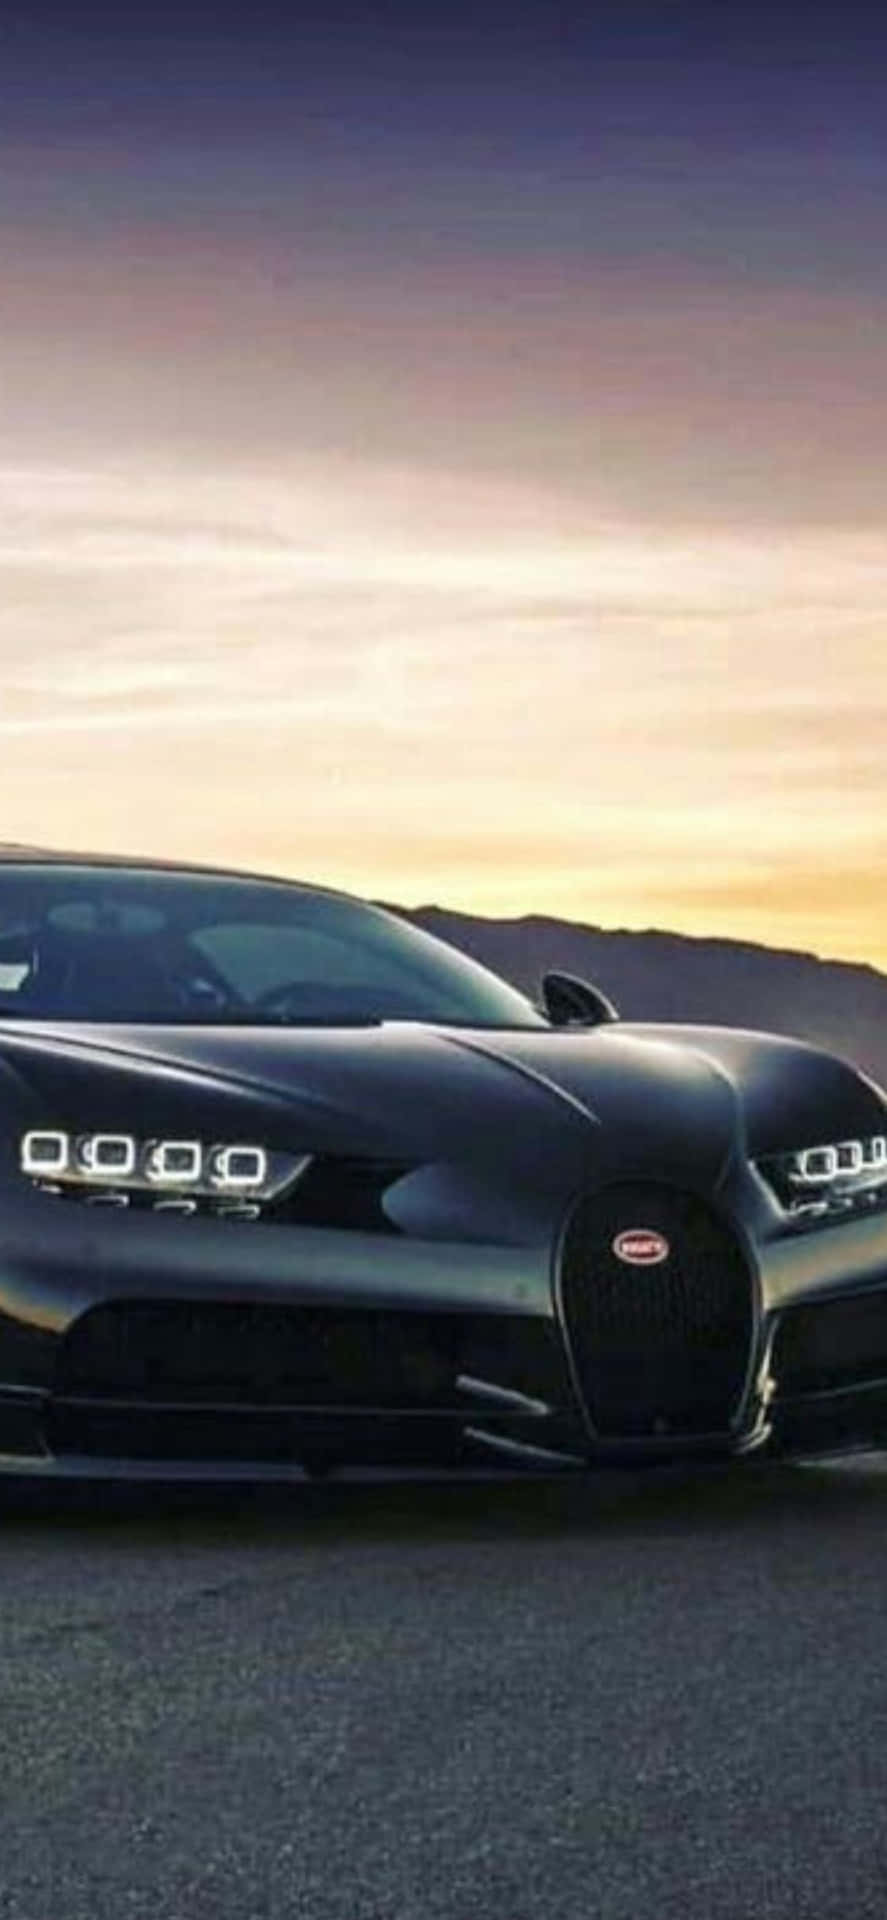 Iphonexs Bugatti: La Combinazione Ultima Di Lusso E Tecnologia